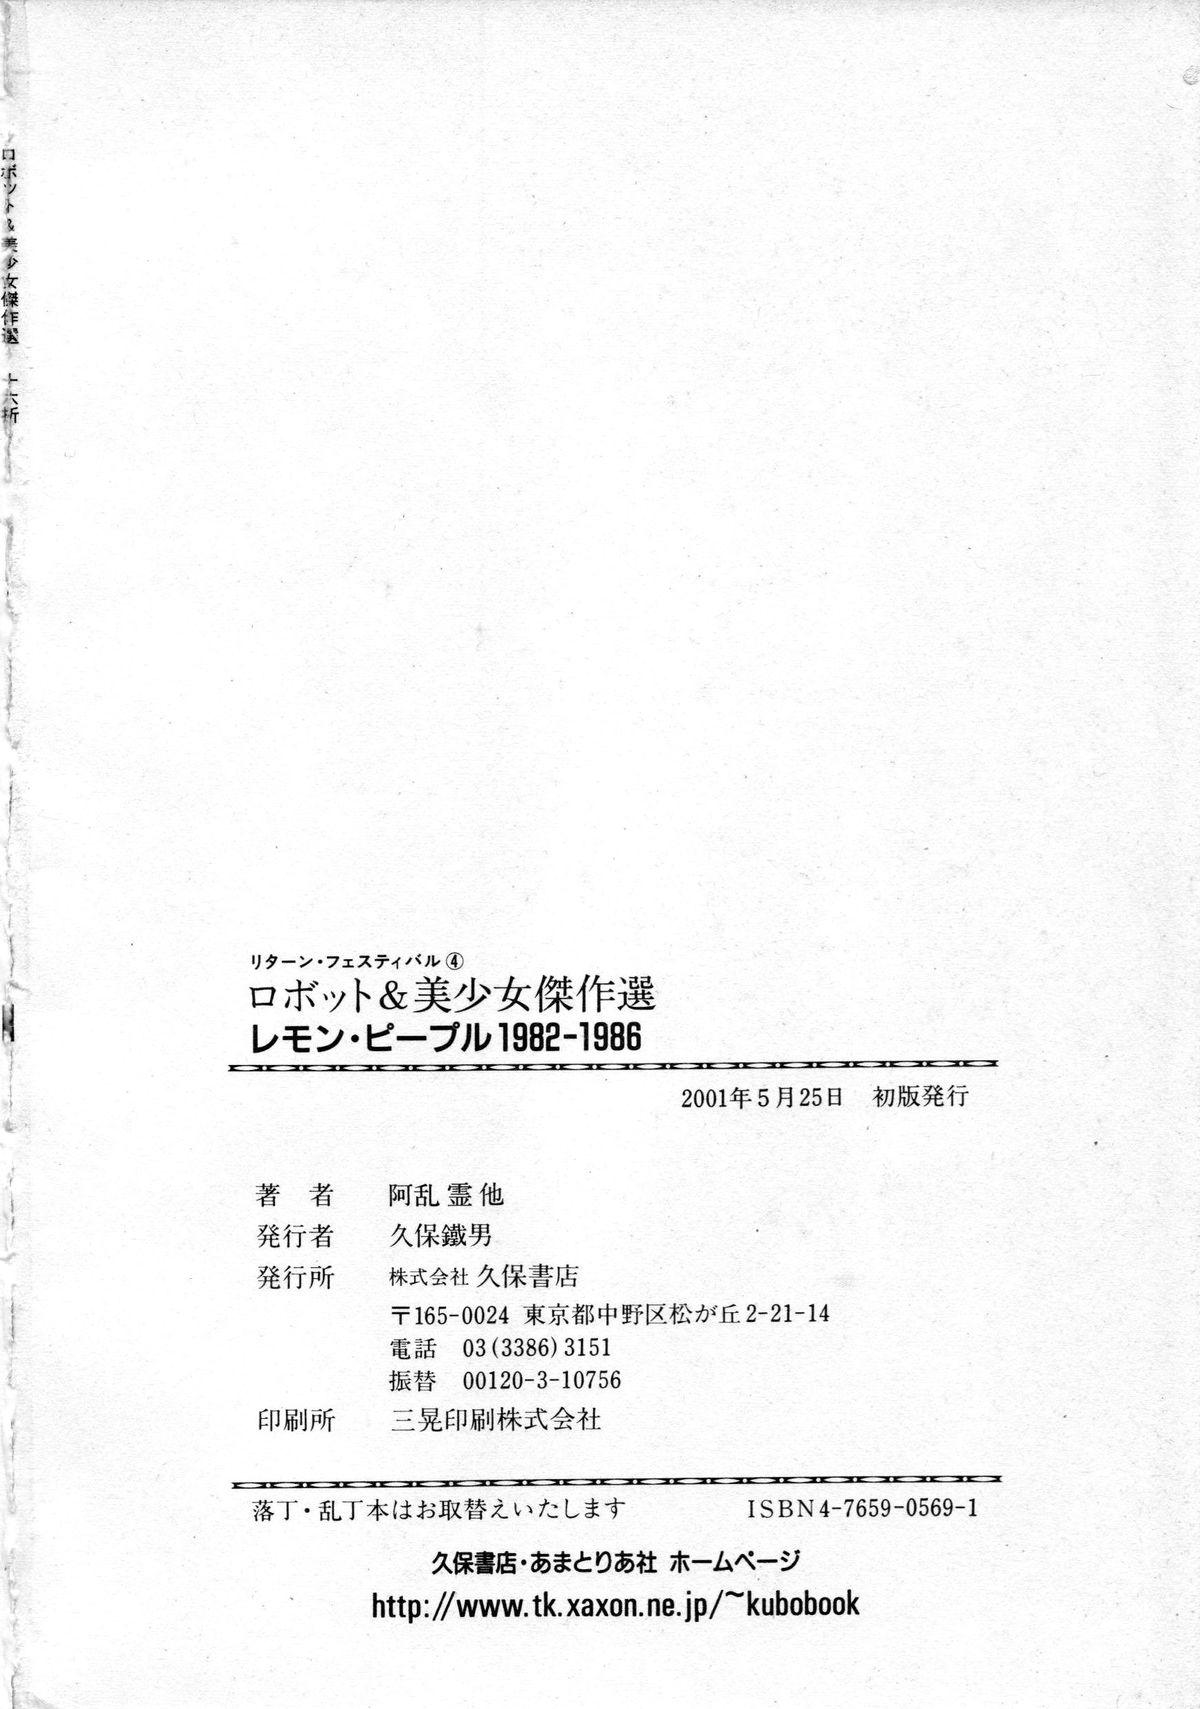 Indoor [Anthology] Robot & Bishoujo Kessakusen - Lemon People 1982-1986 - Iczer Bottom - Page 248